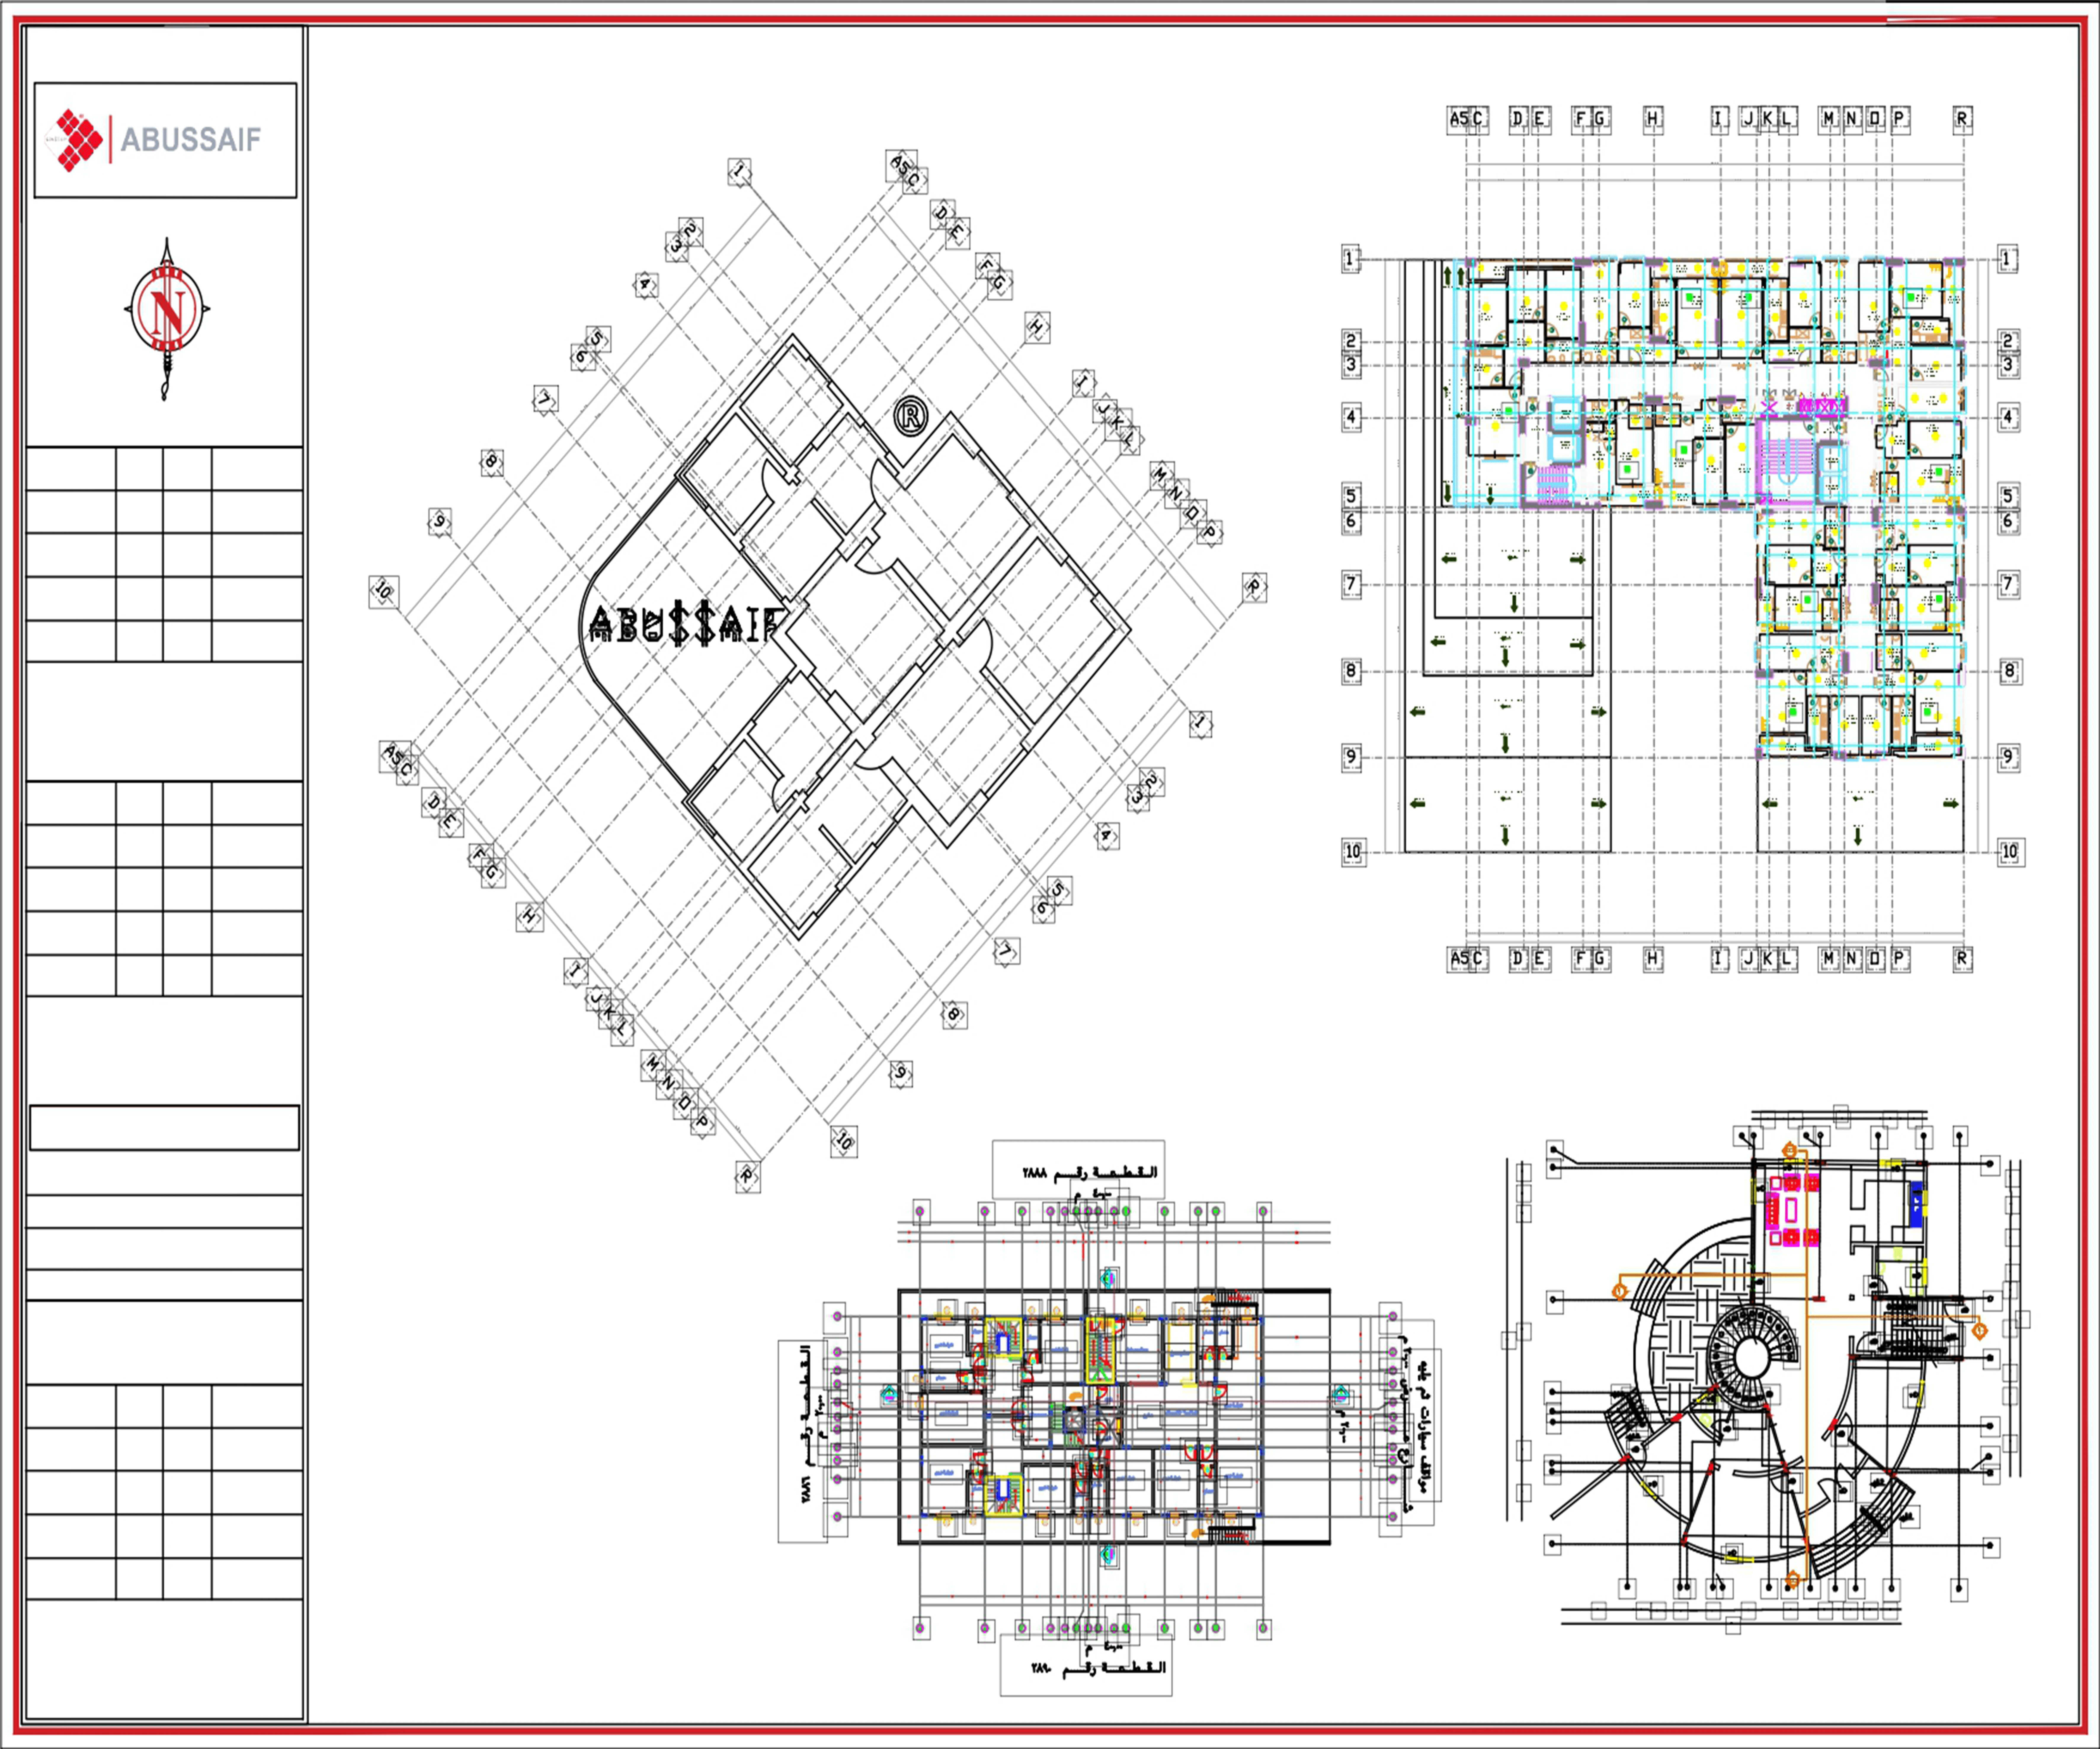 Planos: o conceito arquitetônico depois de ter determinado os requisitos e os termos da construção para o sítio do projeto.